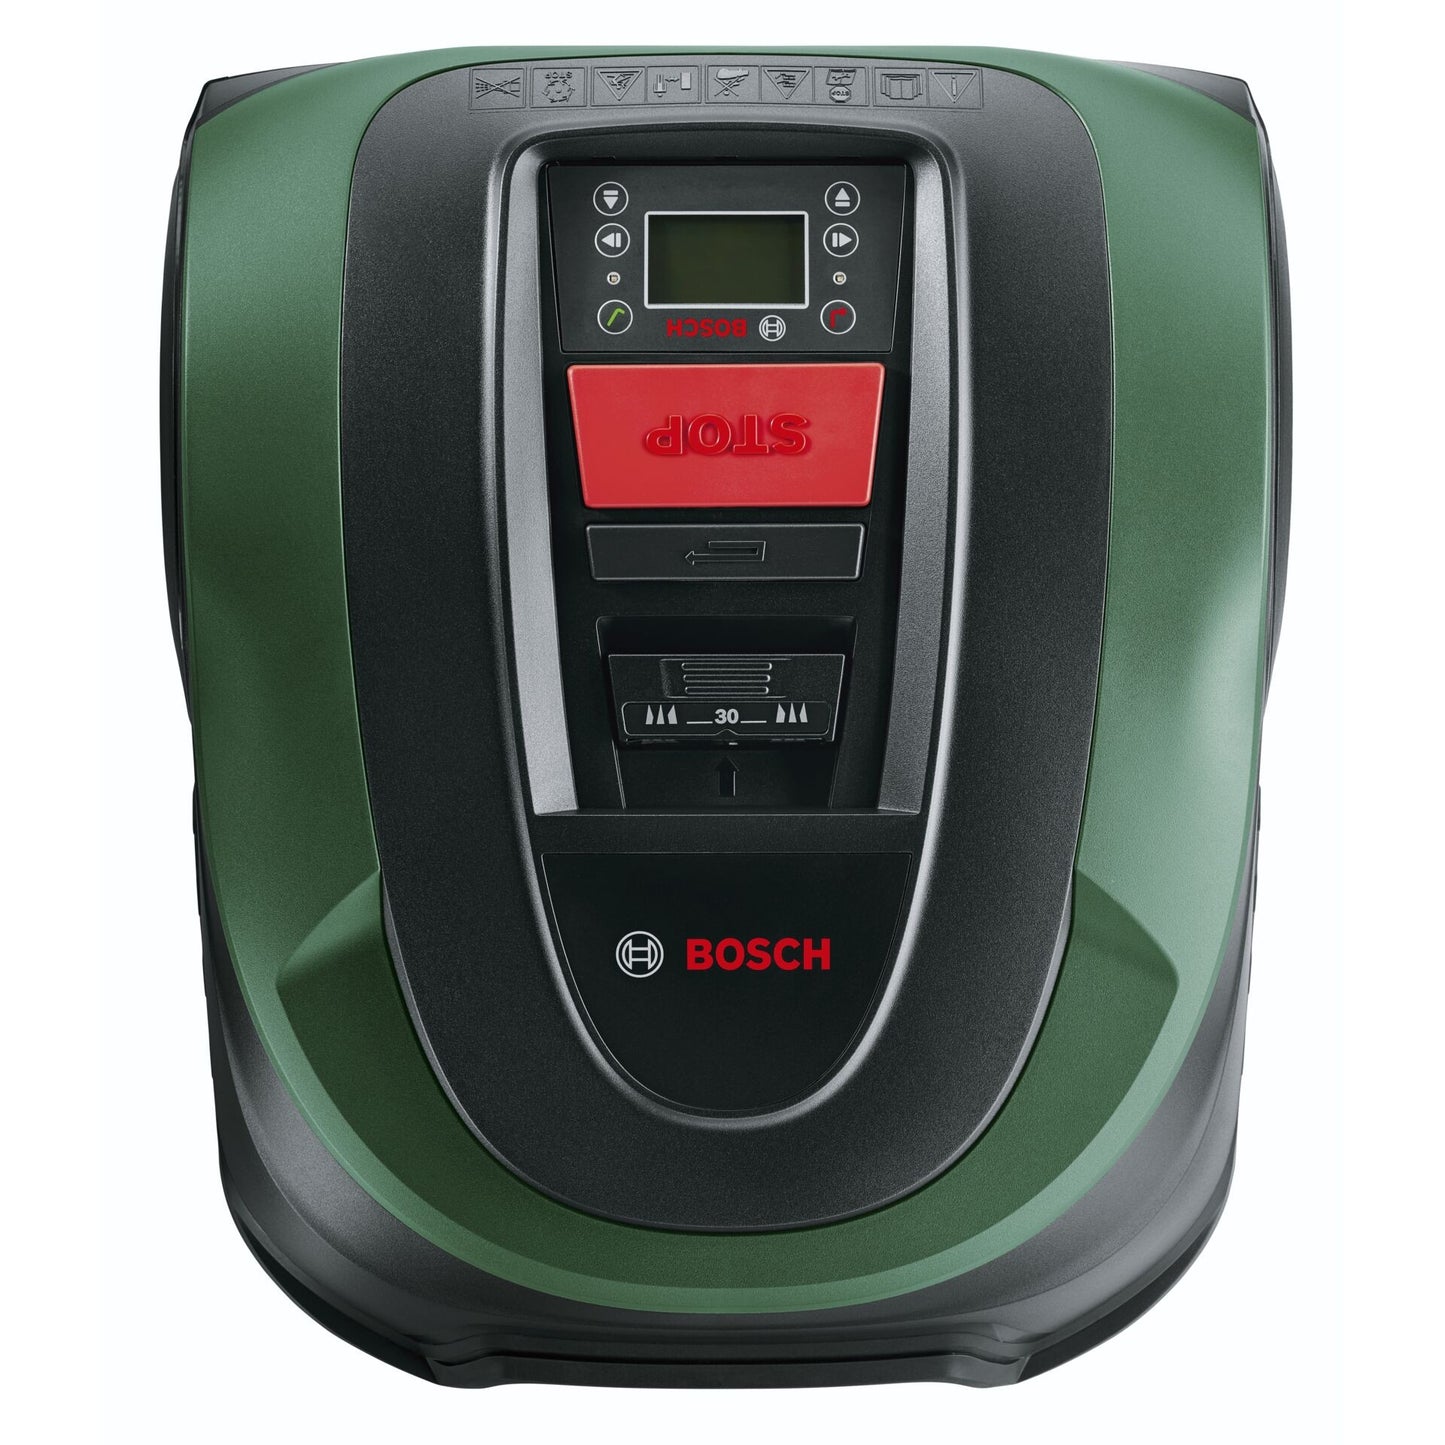 1 x 500m2 | Bosch Indego S 500 Robotic lawn mower Ireland